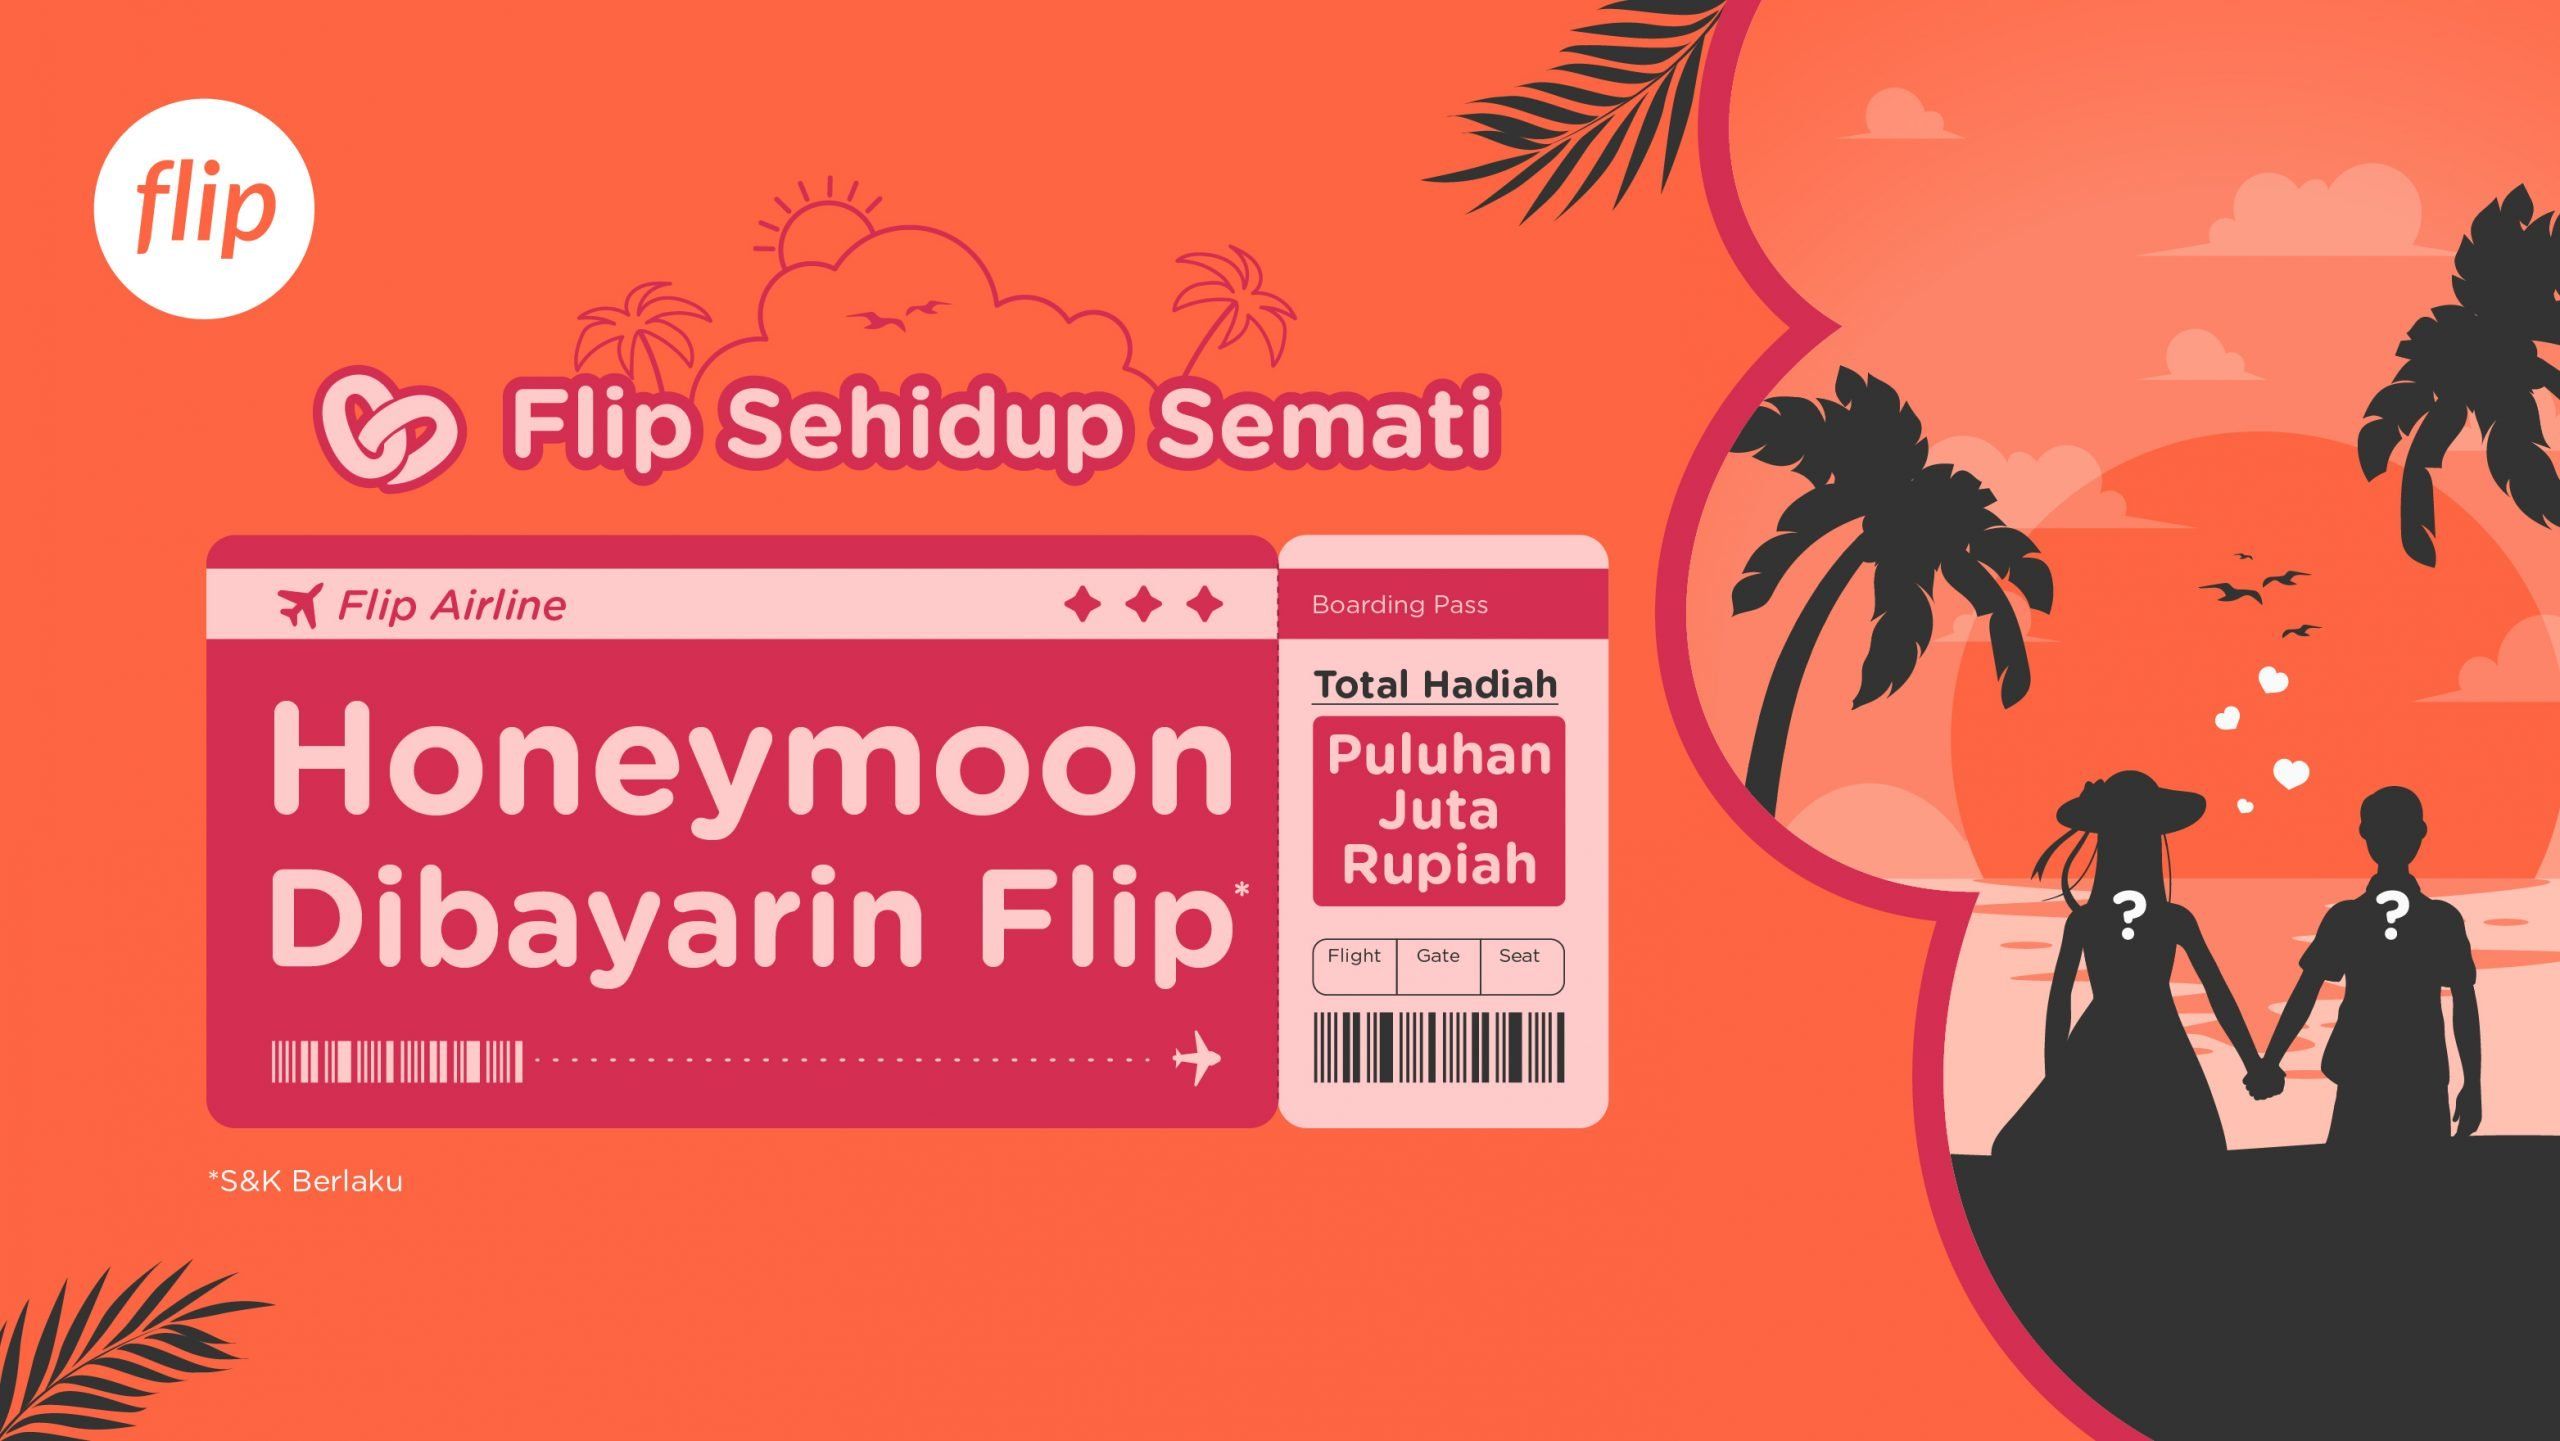 #FlipSehidupSemati: Honeymoon Dibayarin Flip Total Hadiah Ratusan Juta Rupiah